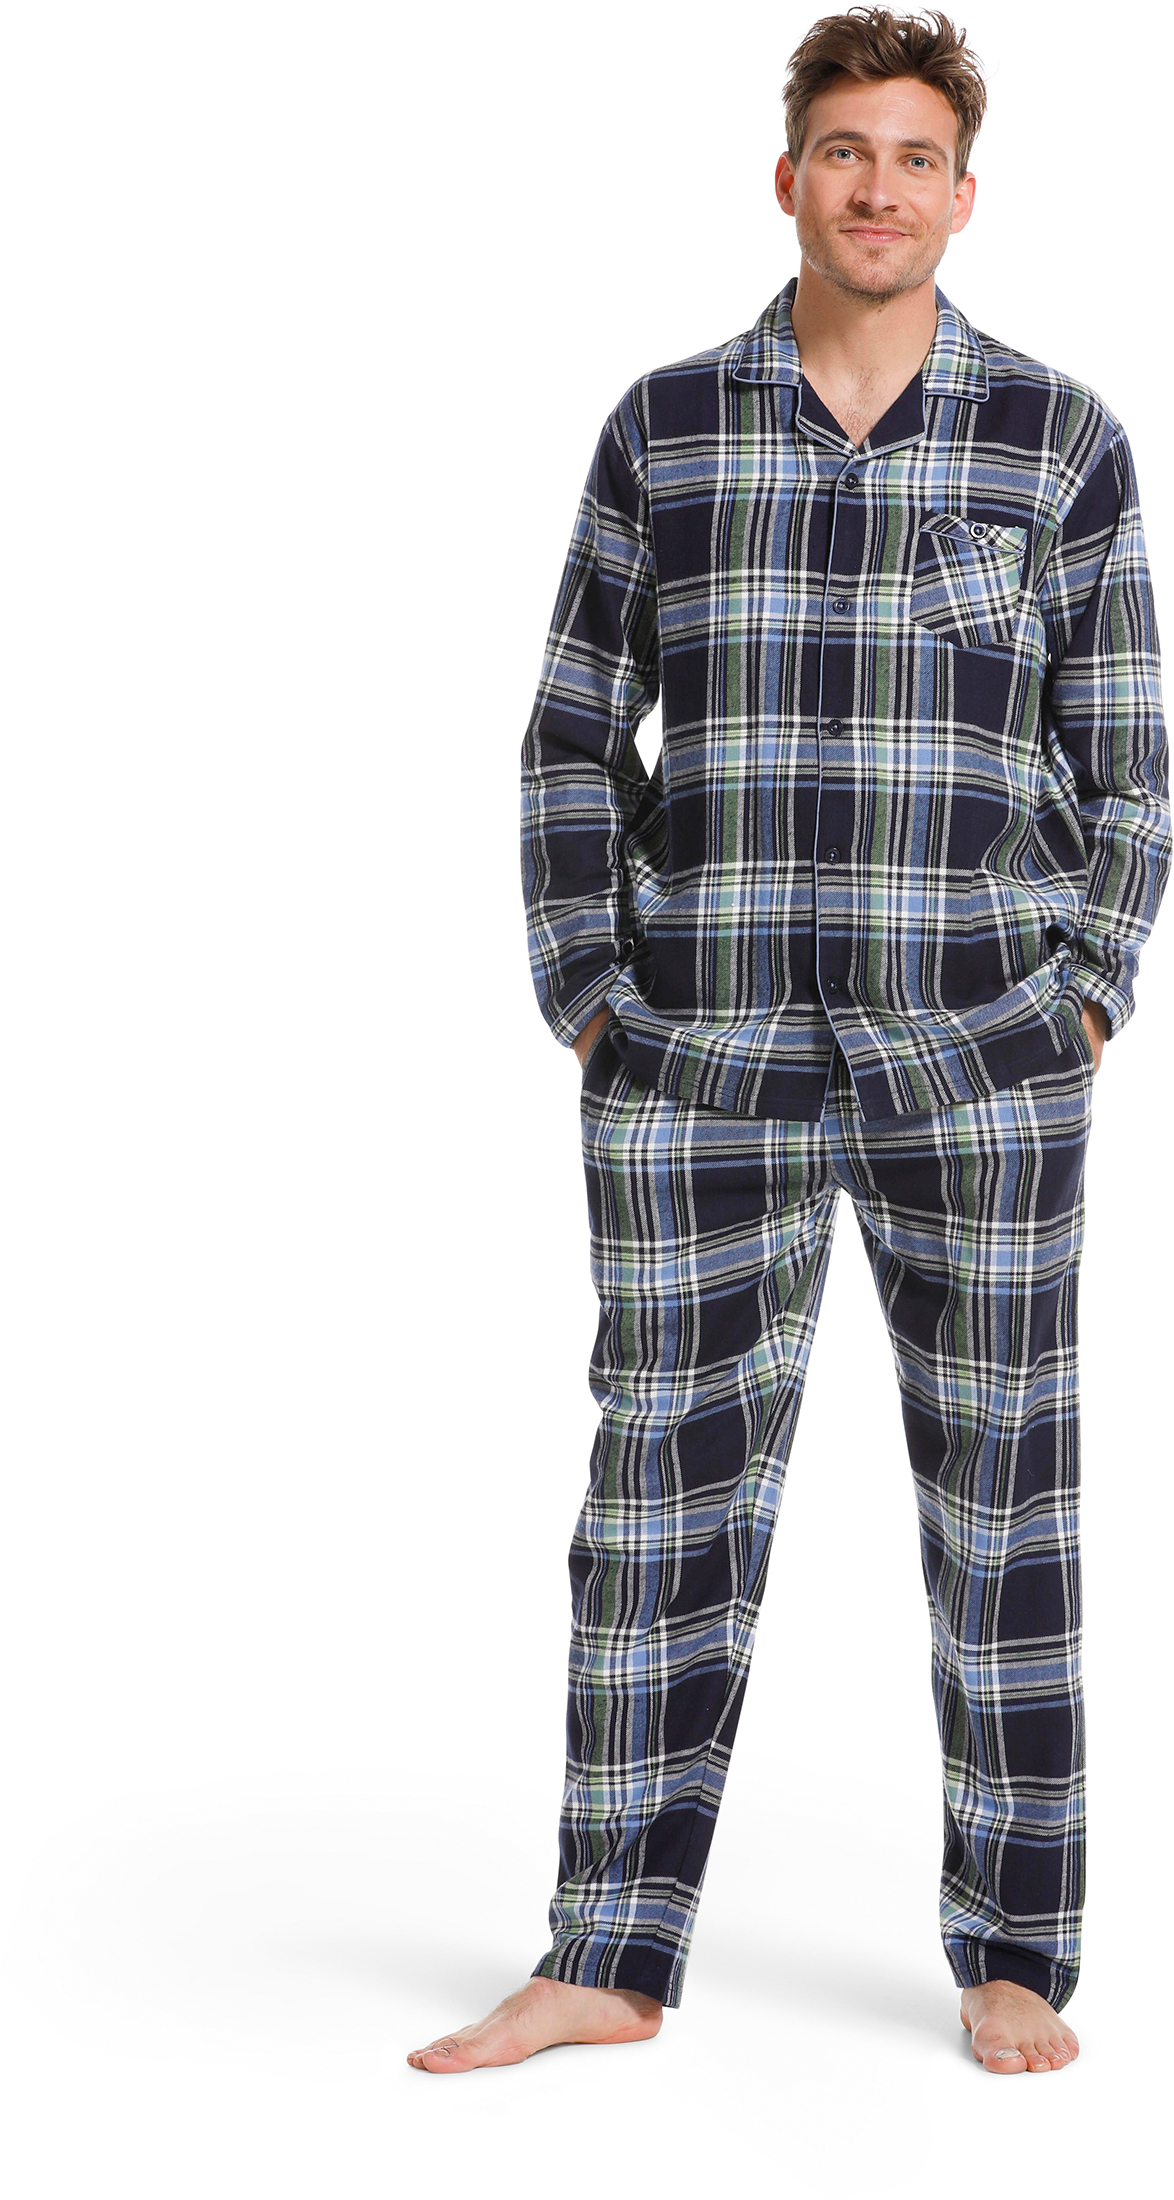 Pastunette heren pyjama flanel 23222-620-6 - Blauw - XXL/56